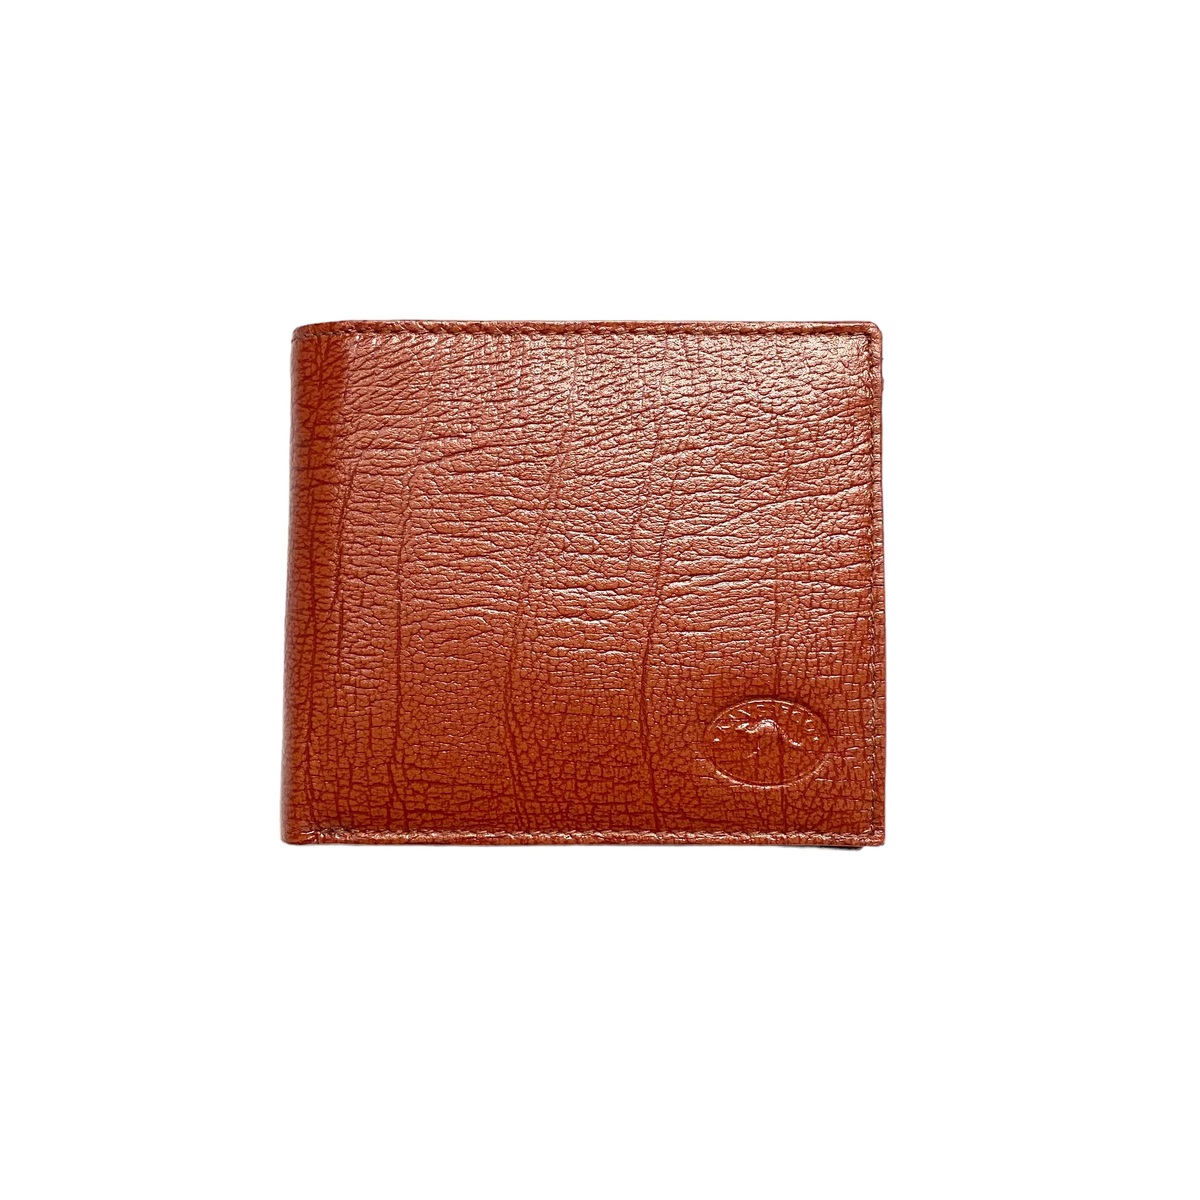 AK3165  Mens wallet Antique Tan Kangaroo leather